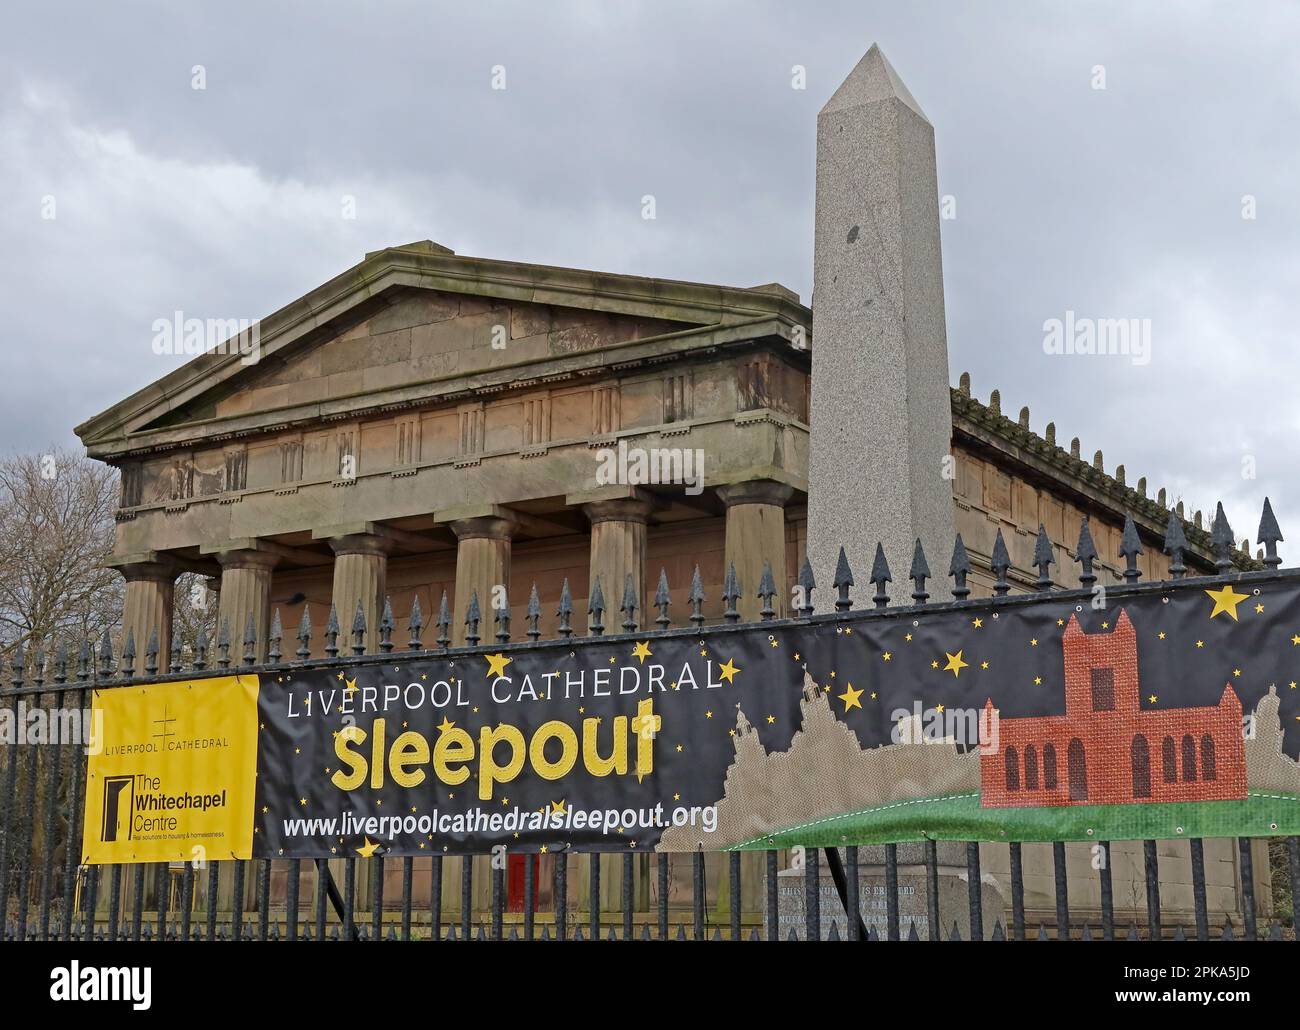 Manifesto pubblicitario del Whitechapel Centre, Cattedrale di Liverpool Charity Sleepout, St James Rd, Liverpool , Merseyside, Inghilterra, REGNO UNITO, L1 7AZ Foto Stock